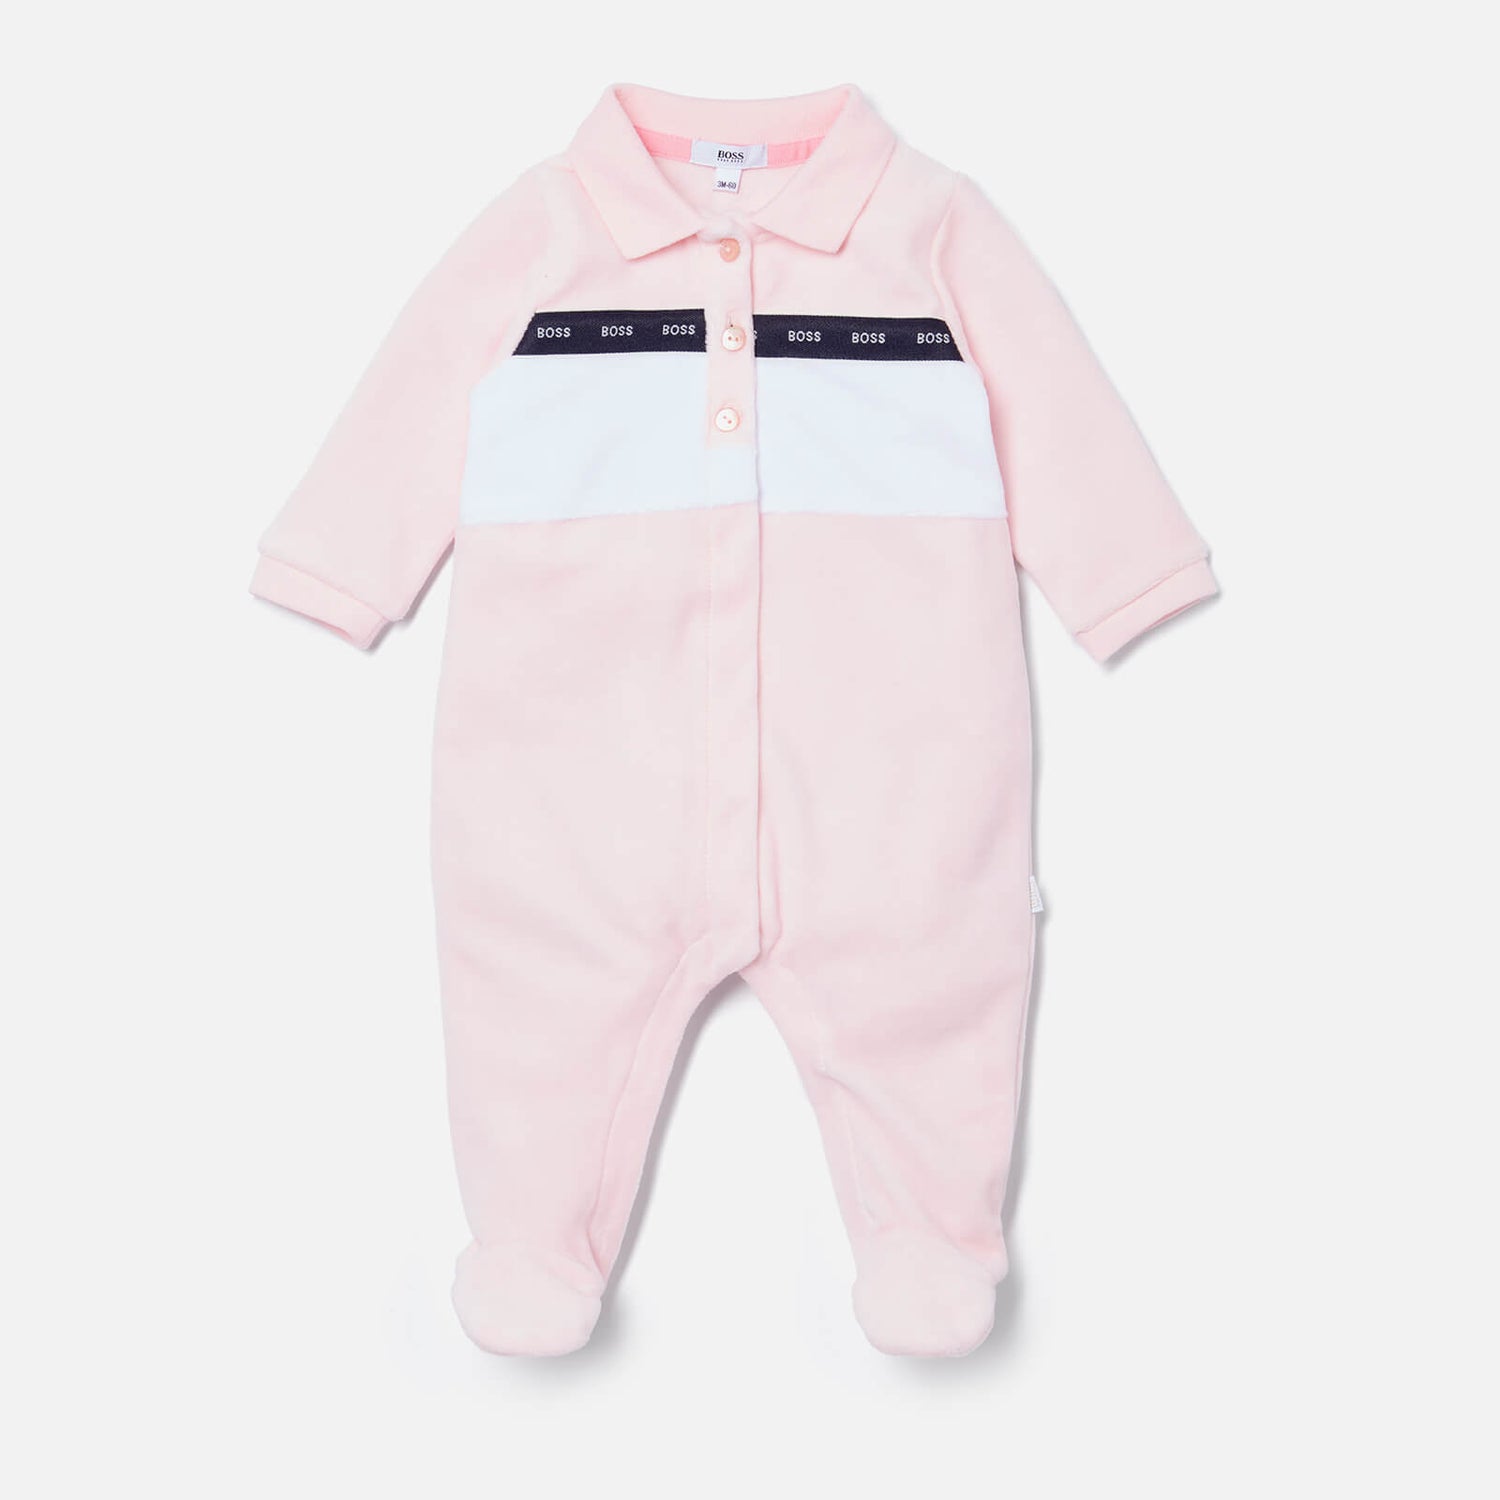 Hugo Boss Baby Sleepsuit Pyjamas - Pink Pale